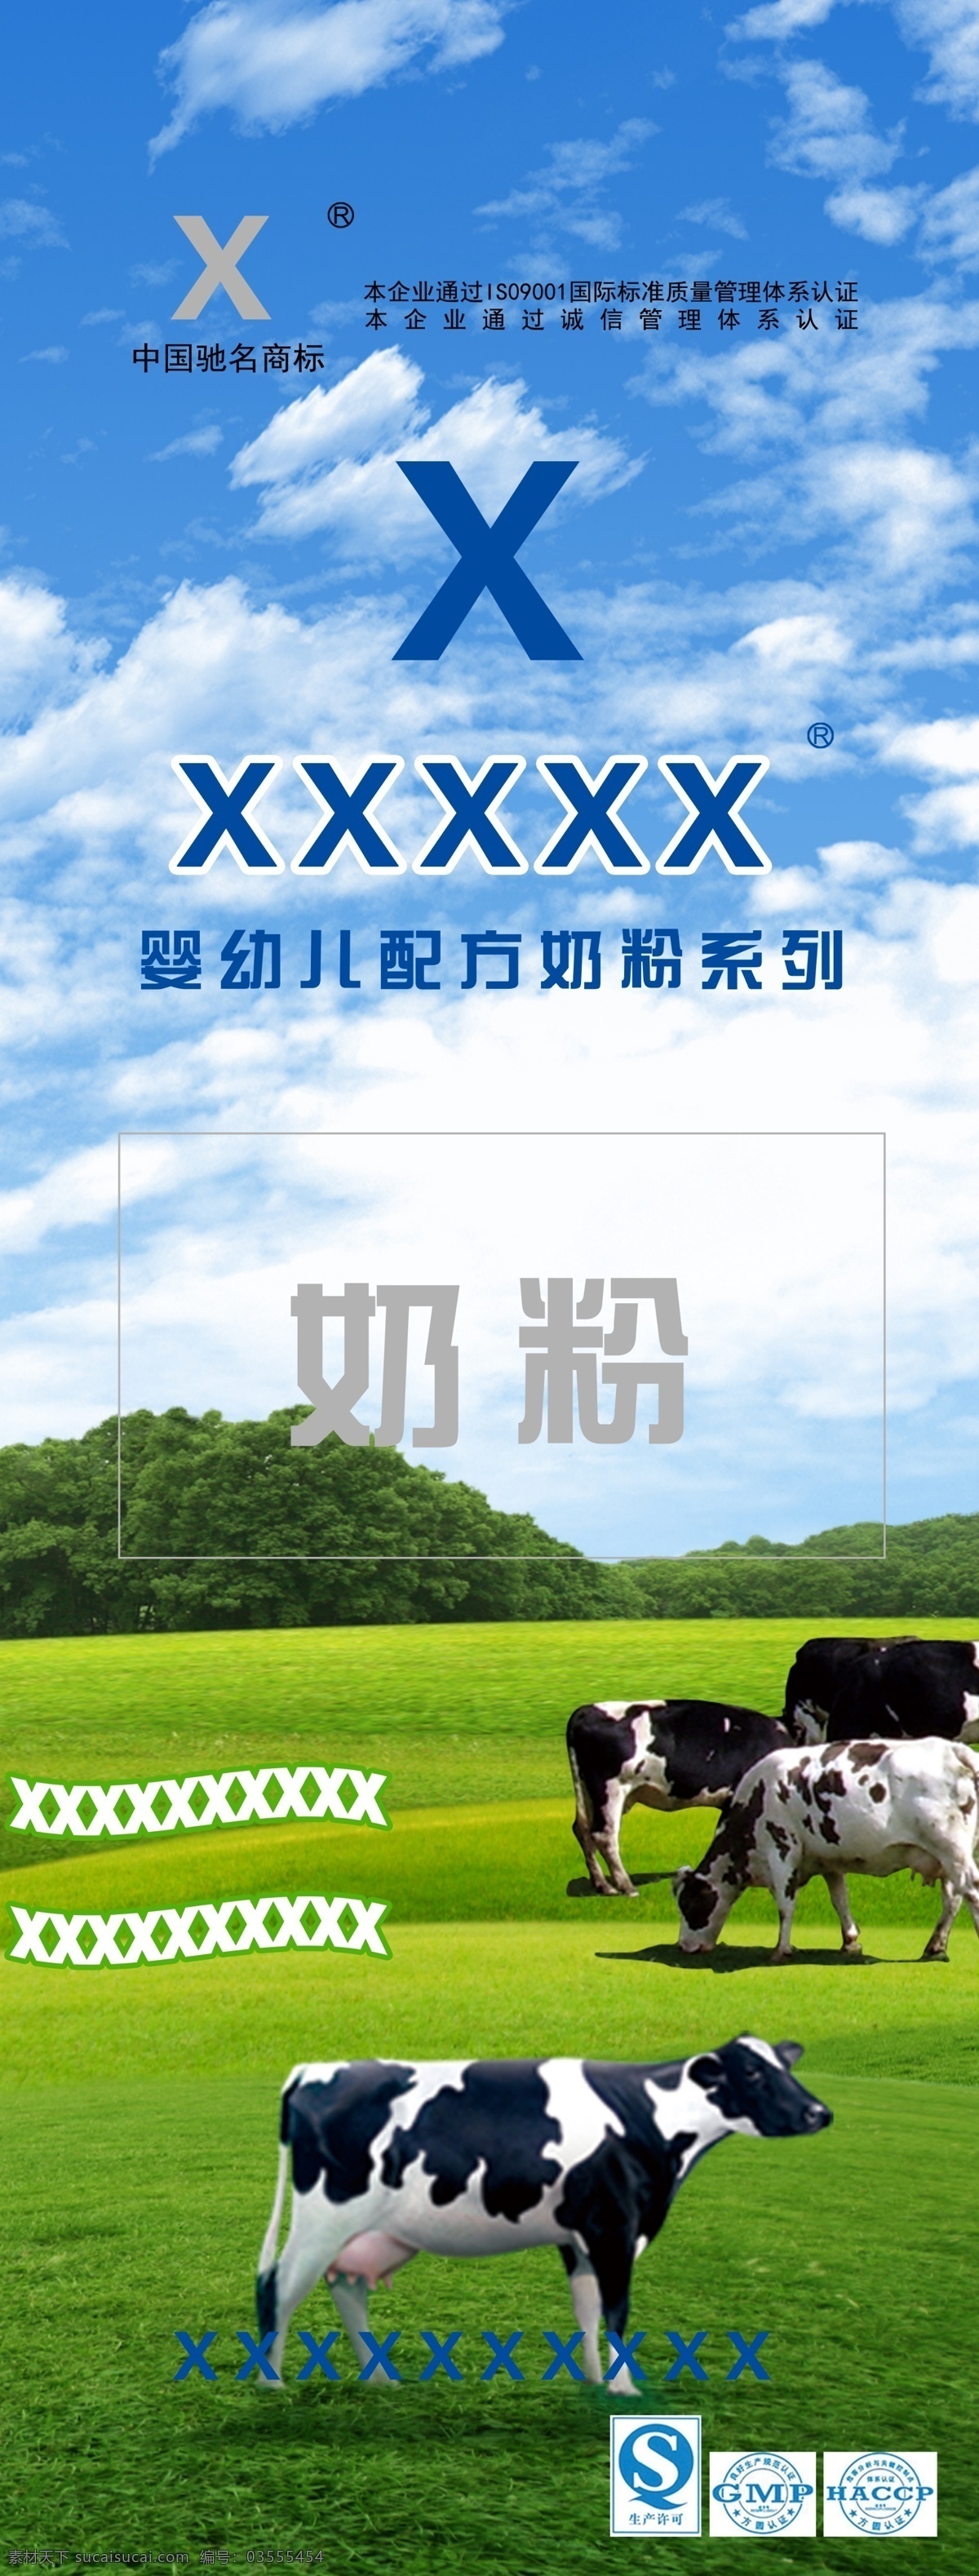 奶粉x展架 奶牛 x展架 奶粉 原生态 展板模板 广告设计模板 源文件